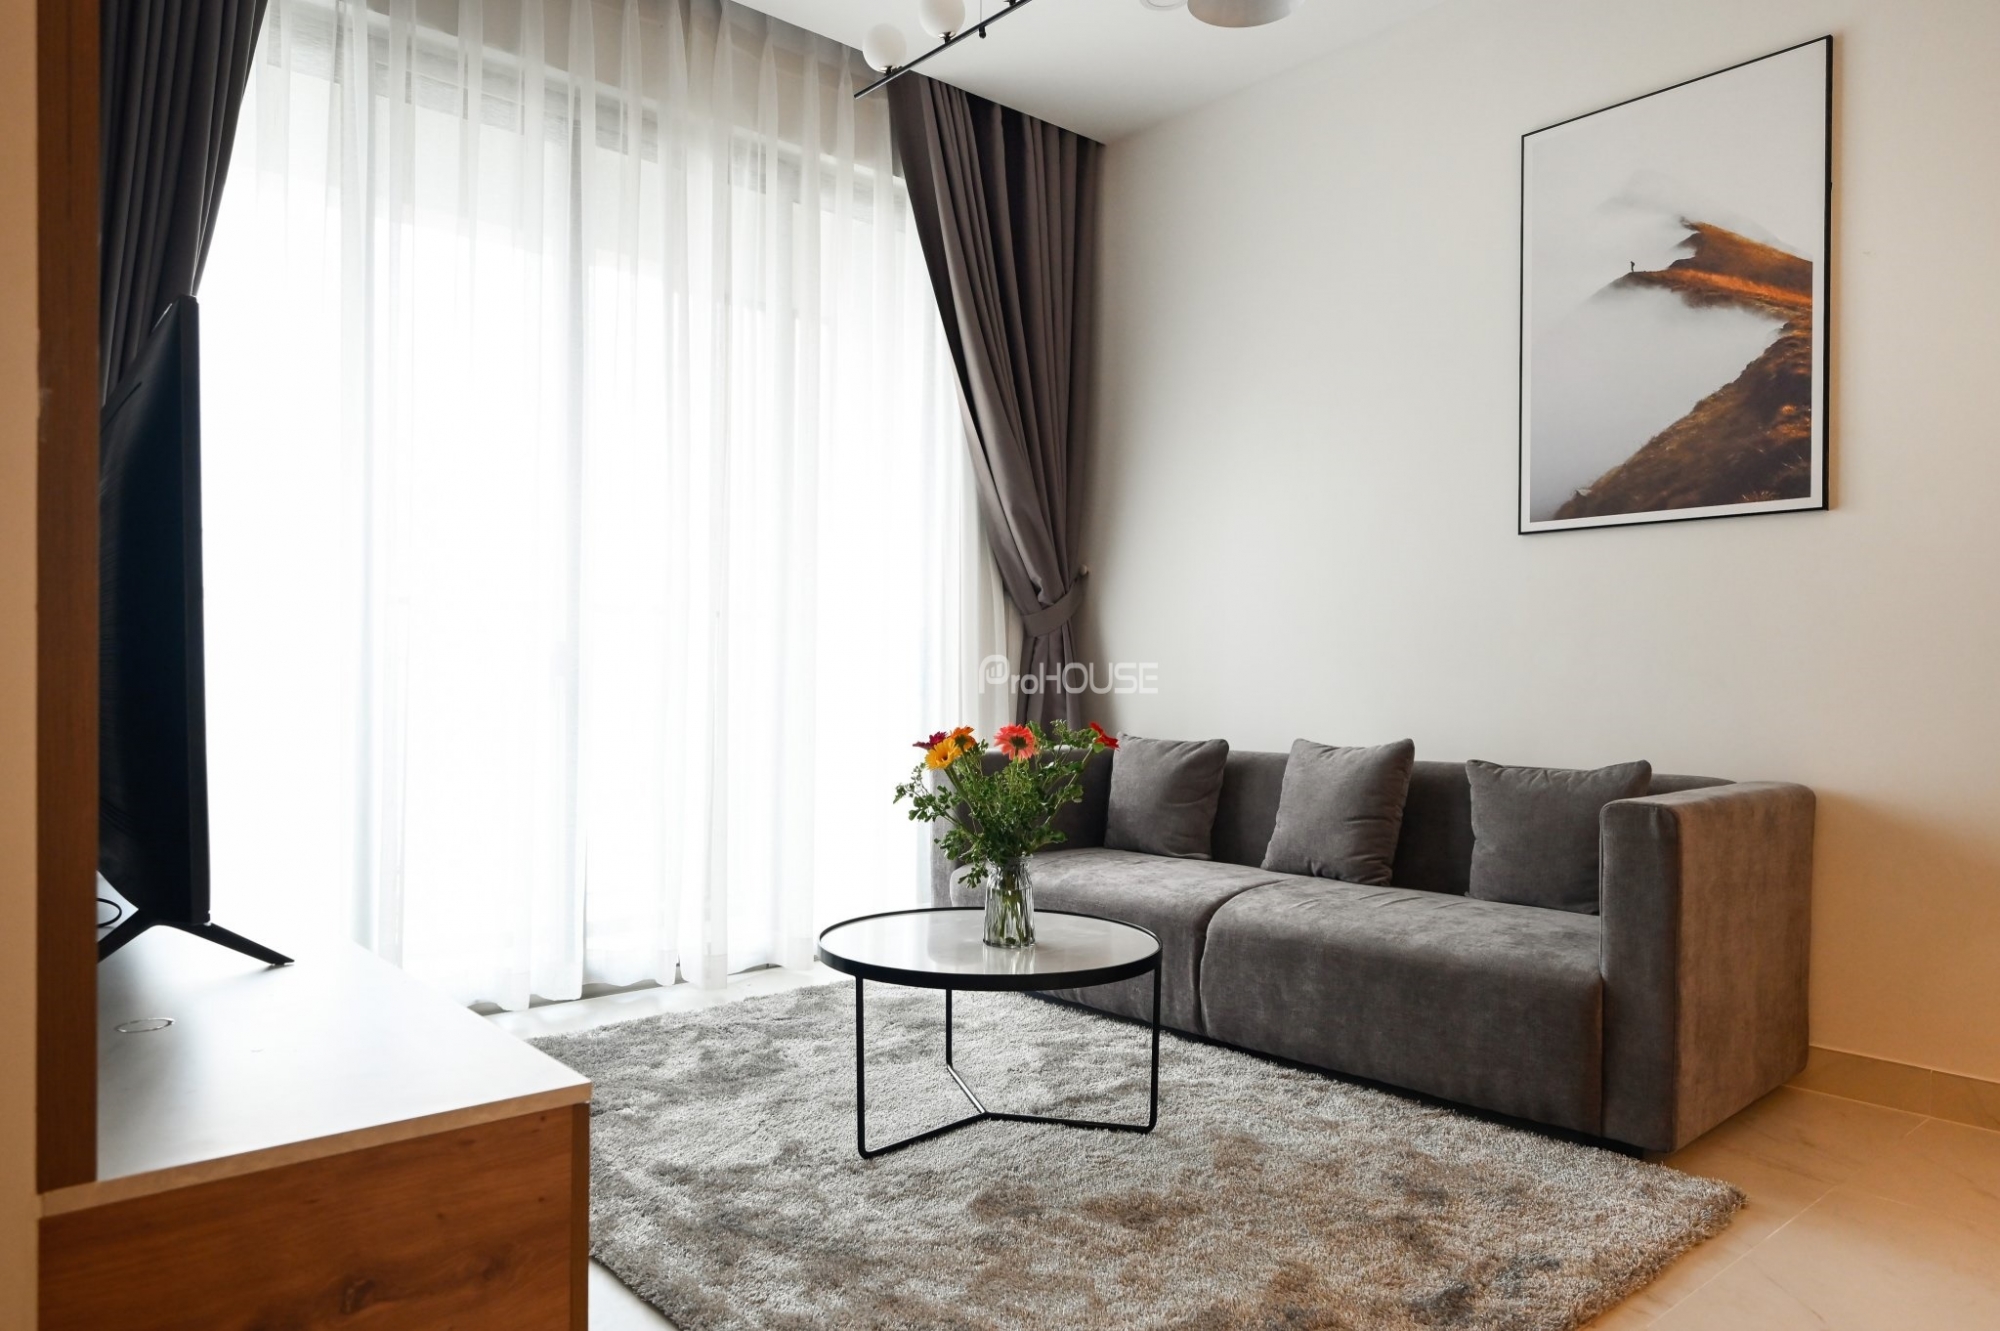 Cho thuê căn hộ 2 phòng ngủ đầy đủ tiện nghi ở The Signature với nội thất đẹp và ấm cúng